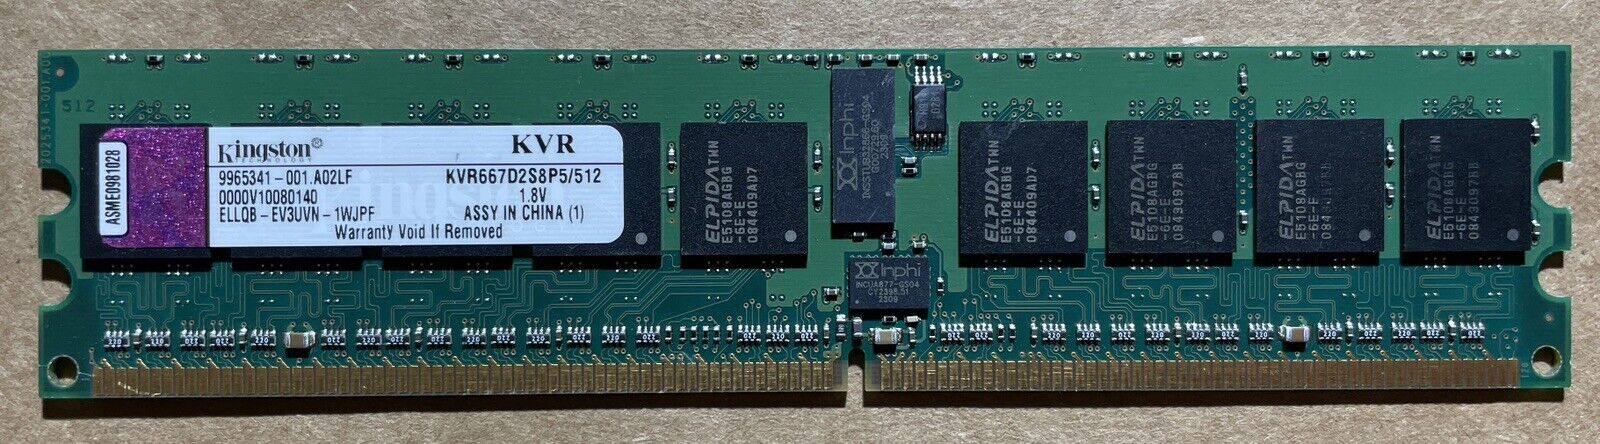 1PC of KINGSTON KVR667D2S8P5/512 PC2-5300 DDR2 667 512M ECC REG FOR SERVER